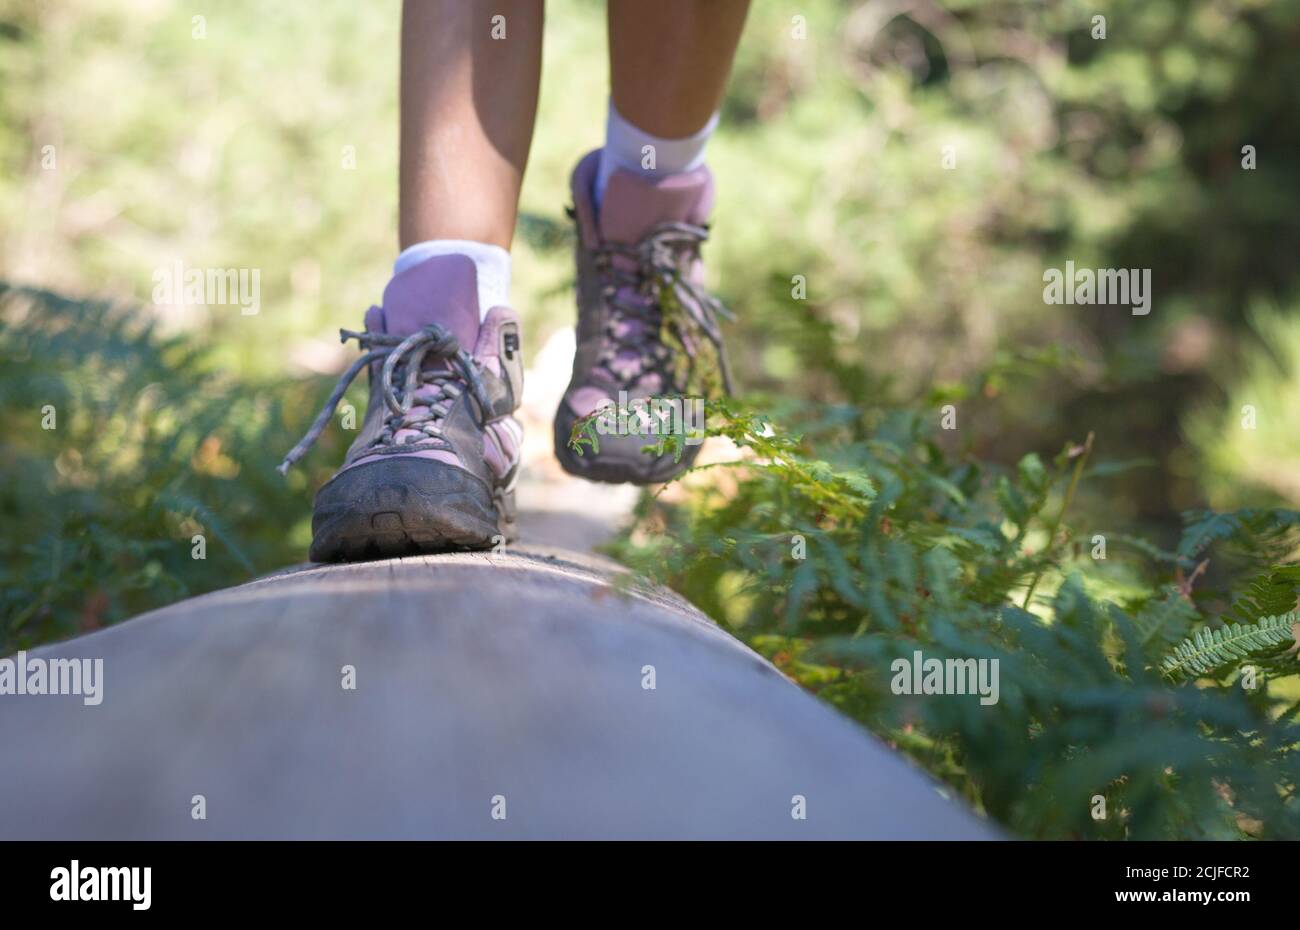 Nahaufnahme der Füße eines Mädchens in Wanderschuhen, die auf einem umgestürzten Baumstamm spazieren und balancieren. Outdoor-Aktivitäten im Wald. Blick von vorne. Stockfoto